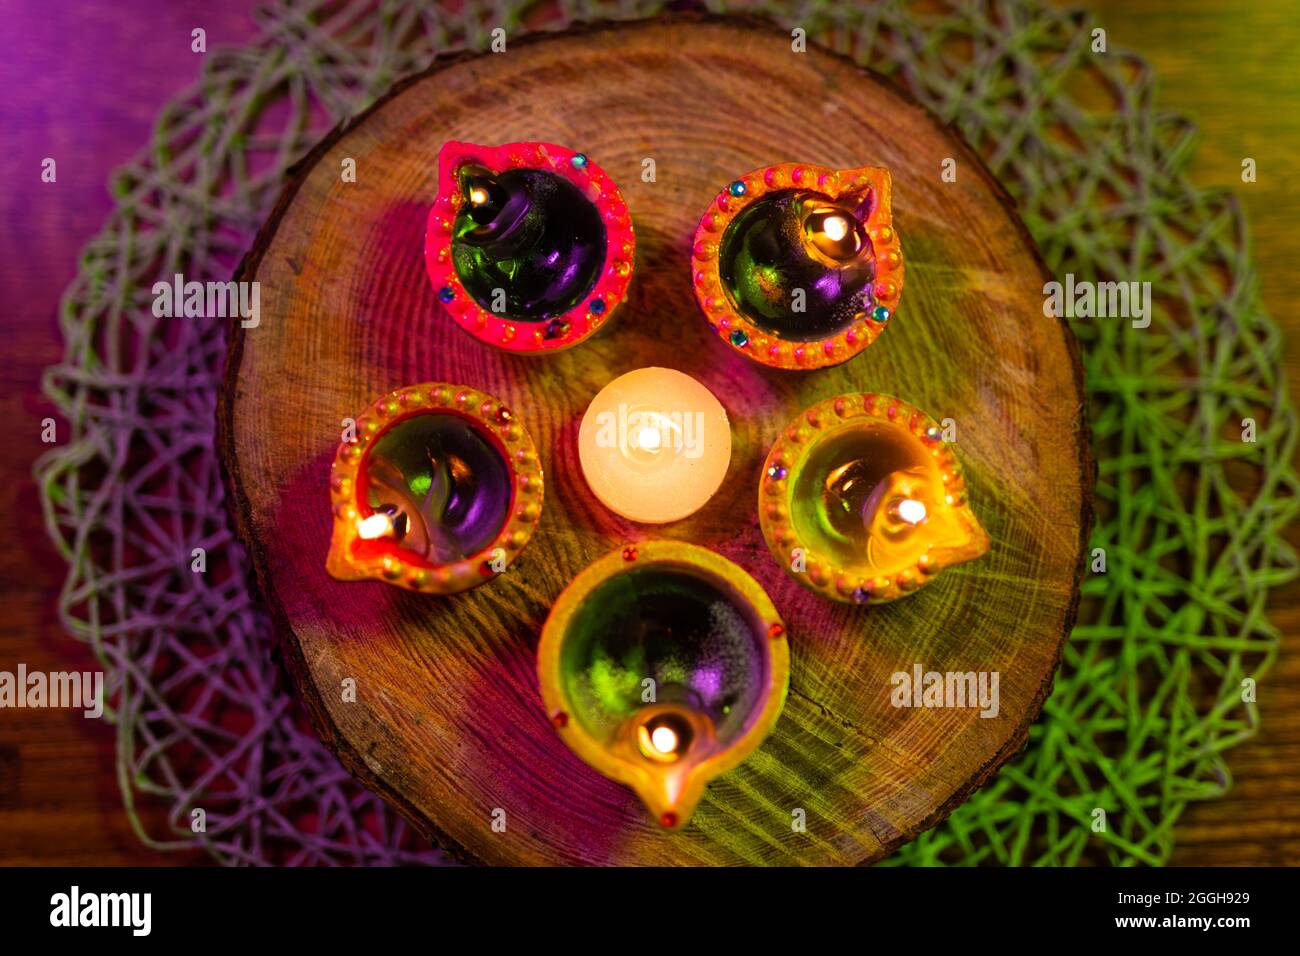 Vier brennende Kerzen in kleinen dekorativen Tontöpfen und Teelicht-Kerze, die auf einem runden Holzbrett brennt Stockfoto